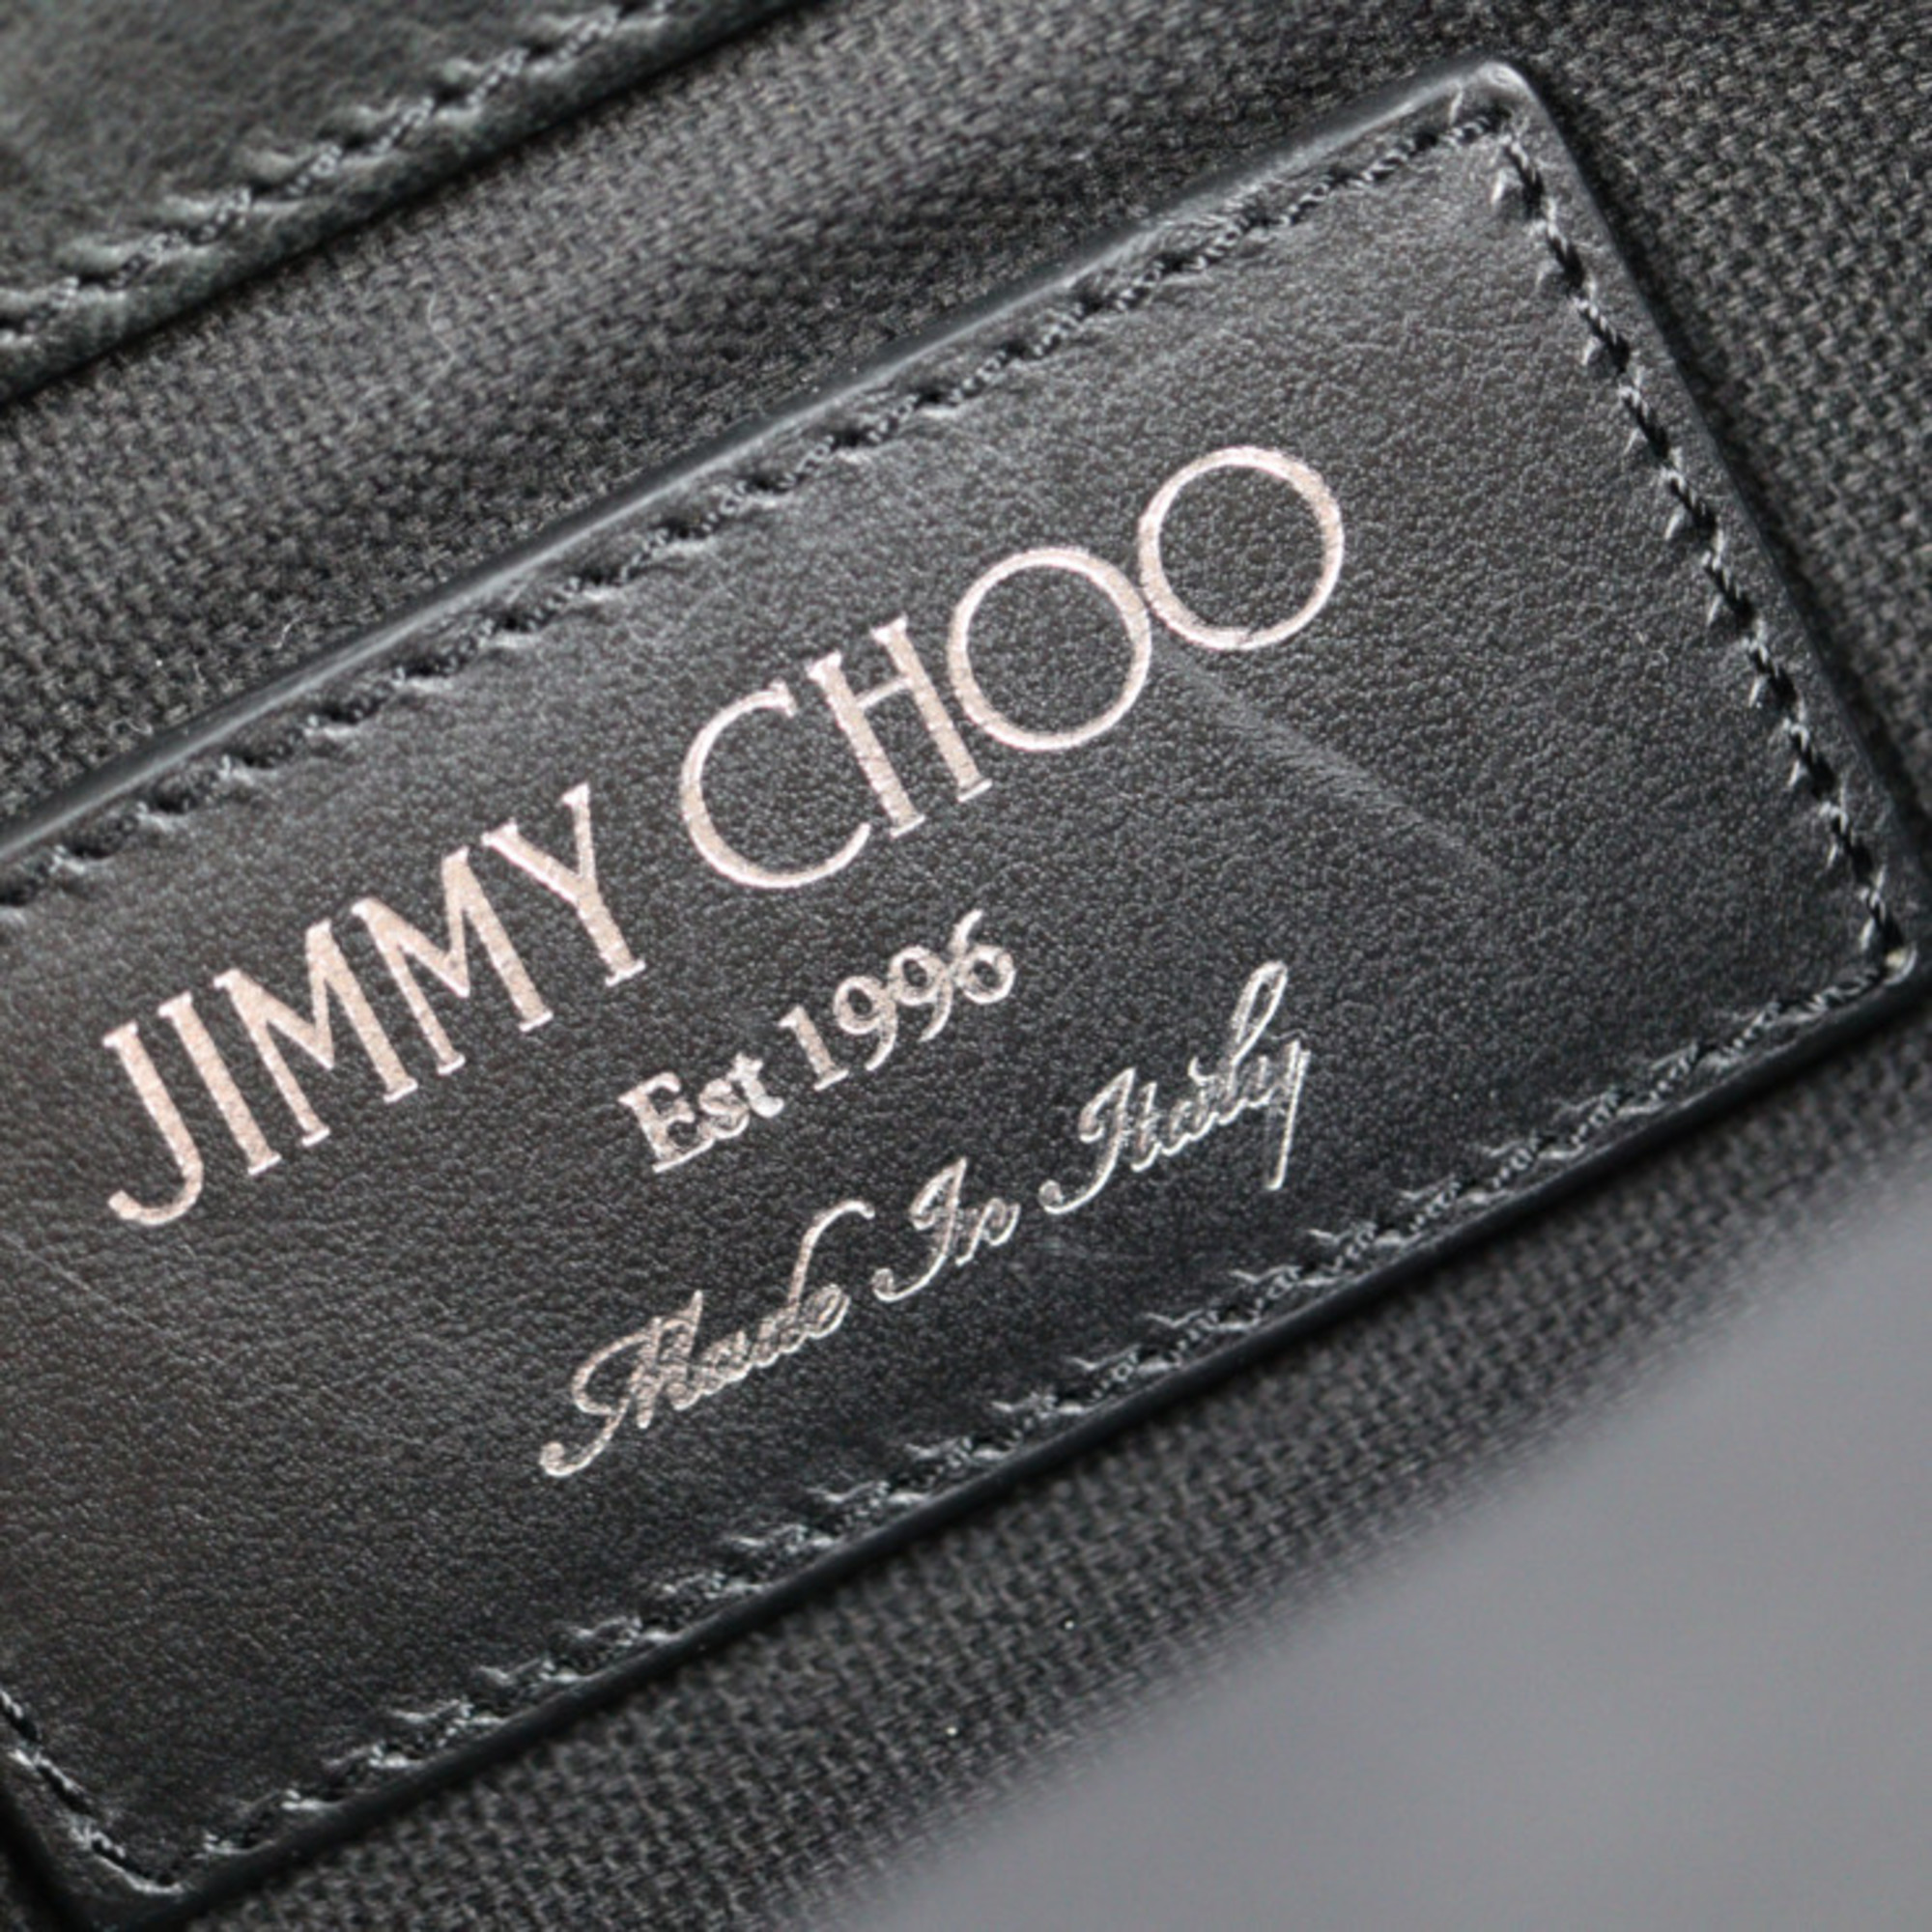 JIMMY CHOO Jimmy Choo DEREK Derek second bag leather black gold metal fittings star studs clutch